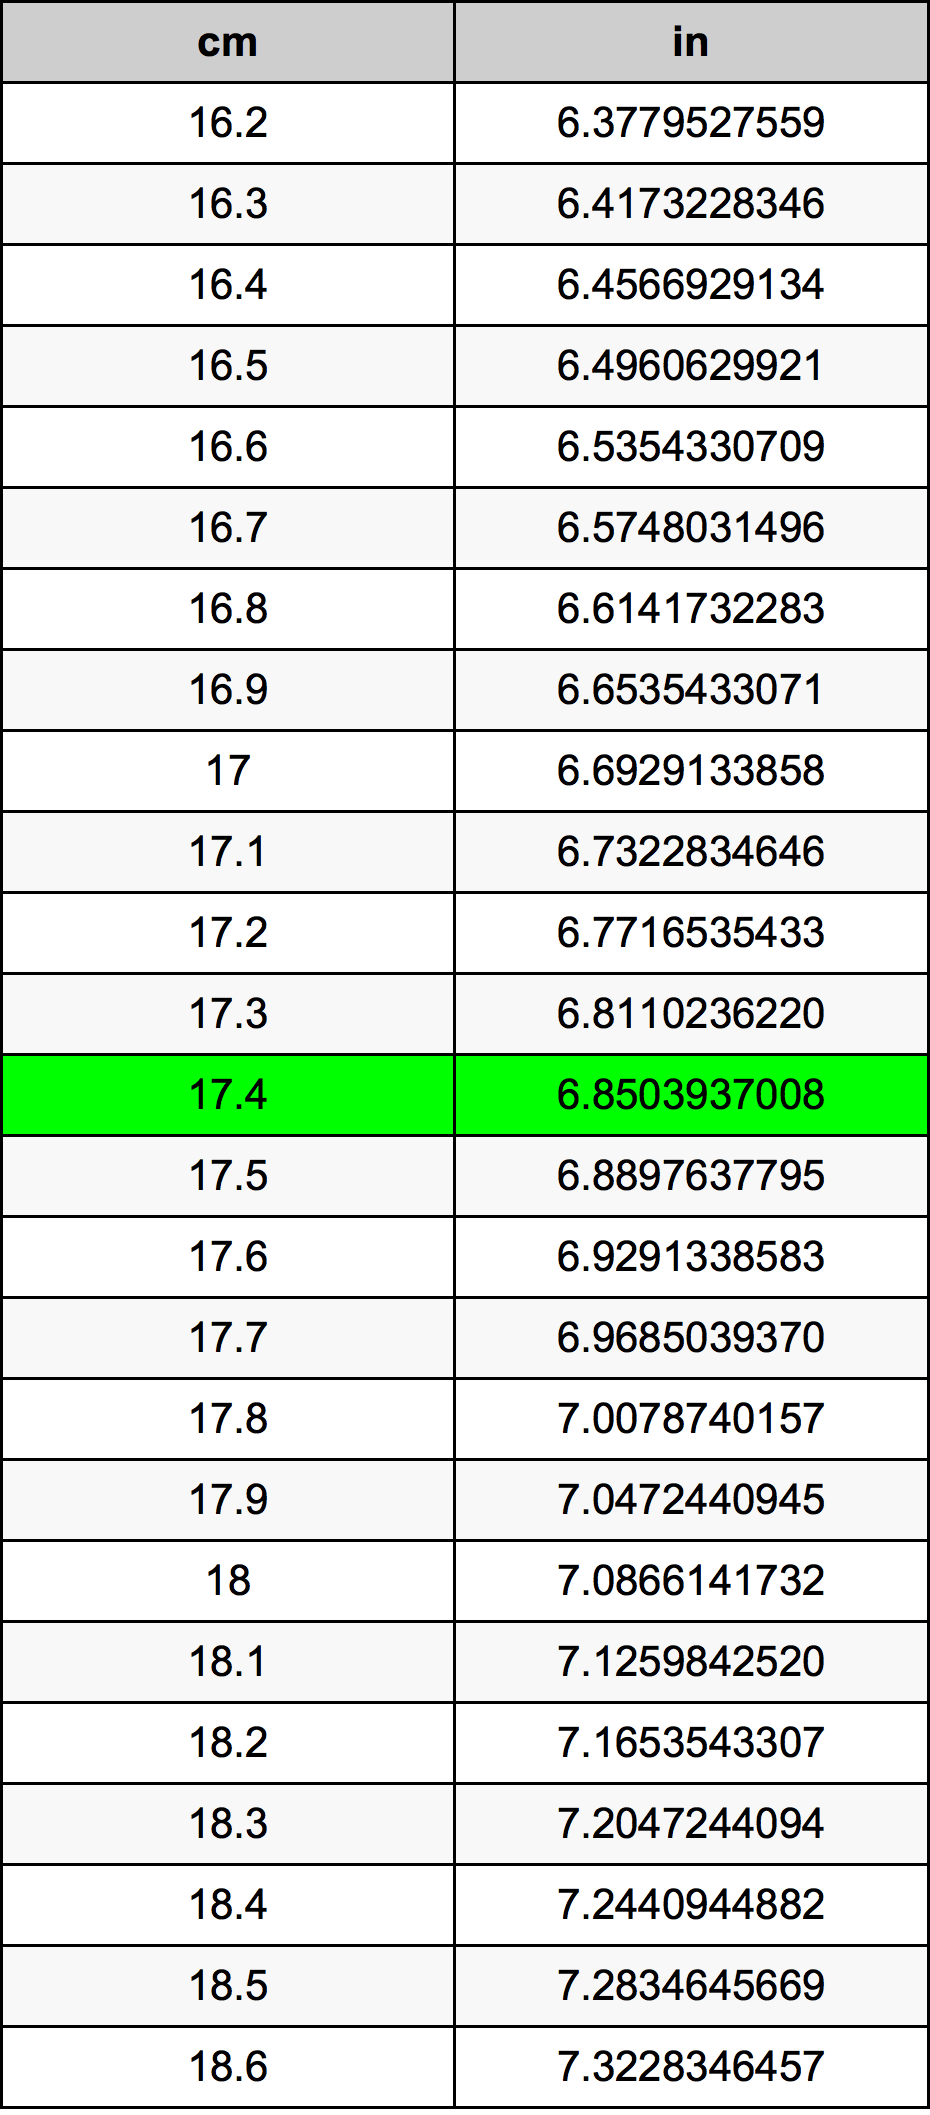 17.4 Centiméter átszámítási táblázat